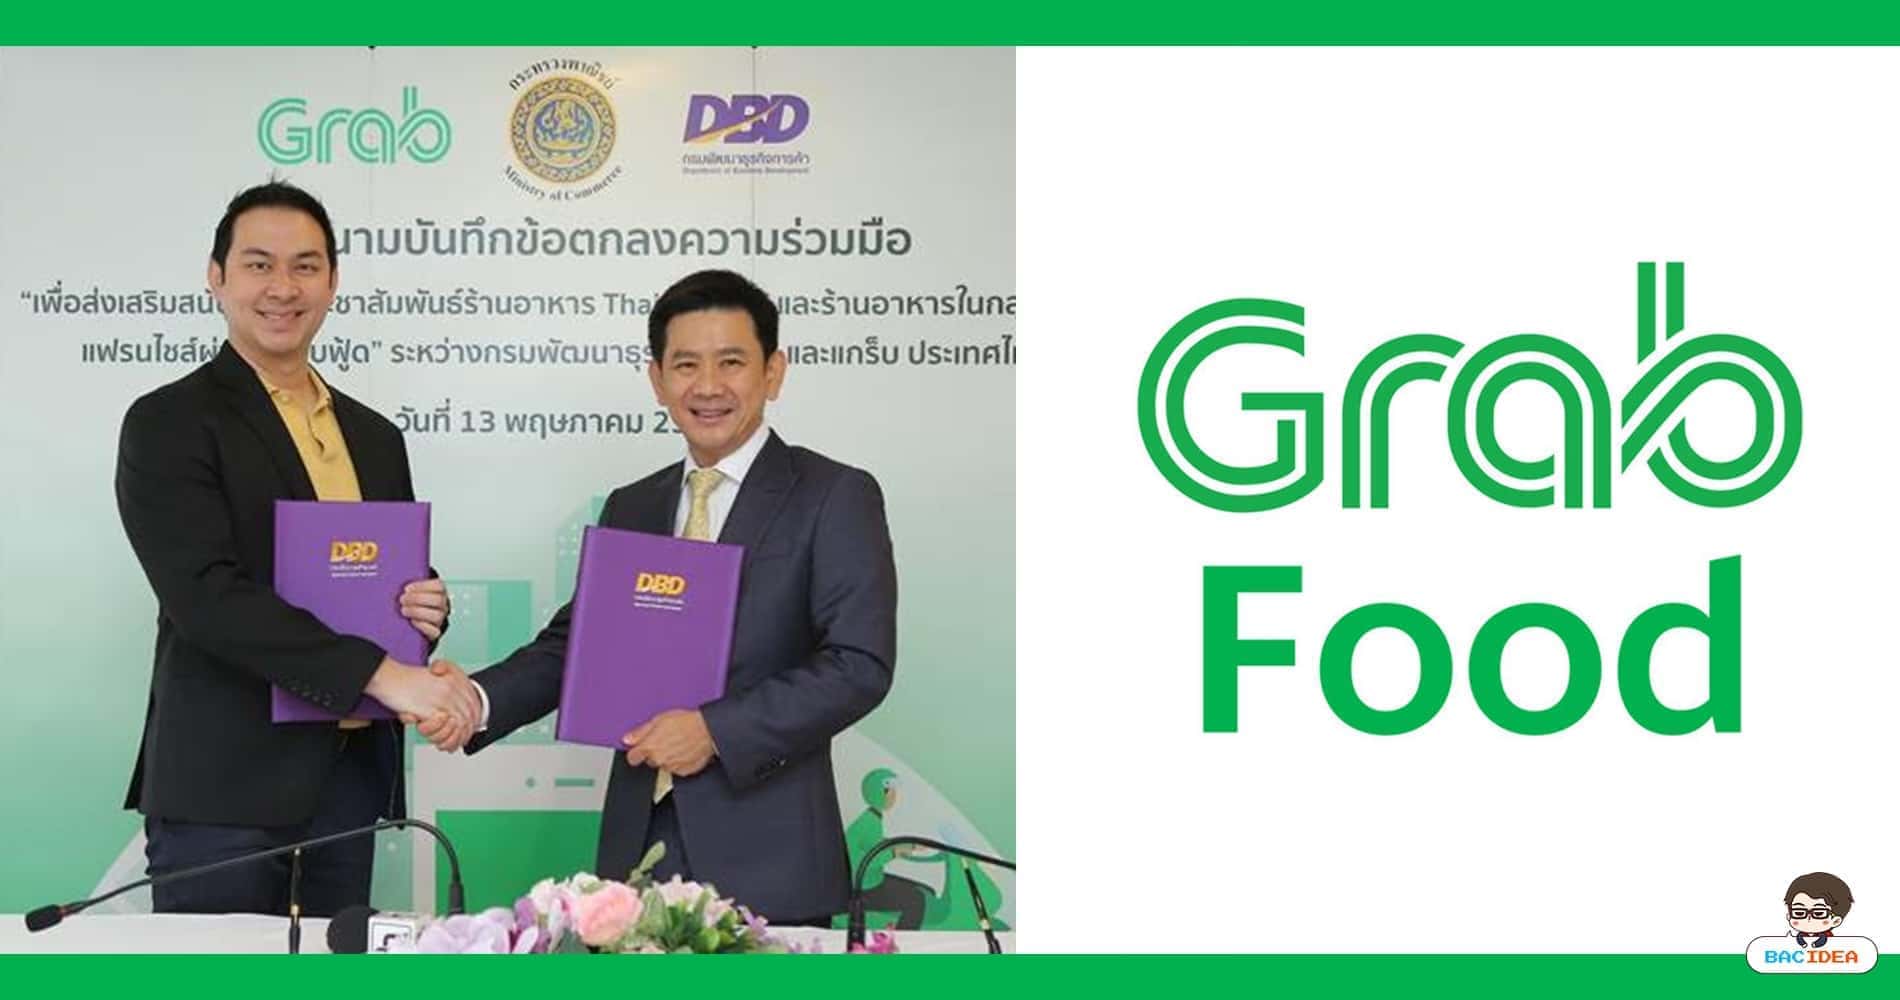 กรมพัฒน์ฯ จับมือ Grab เพิ่มช่องทางการจำหน่ายอาหารของร้าน ‘Thai SELECT’ และร้านอาหารในกลุ่มธุรกิจแฟรนไชส์ ผ่าน Grab Food 1